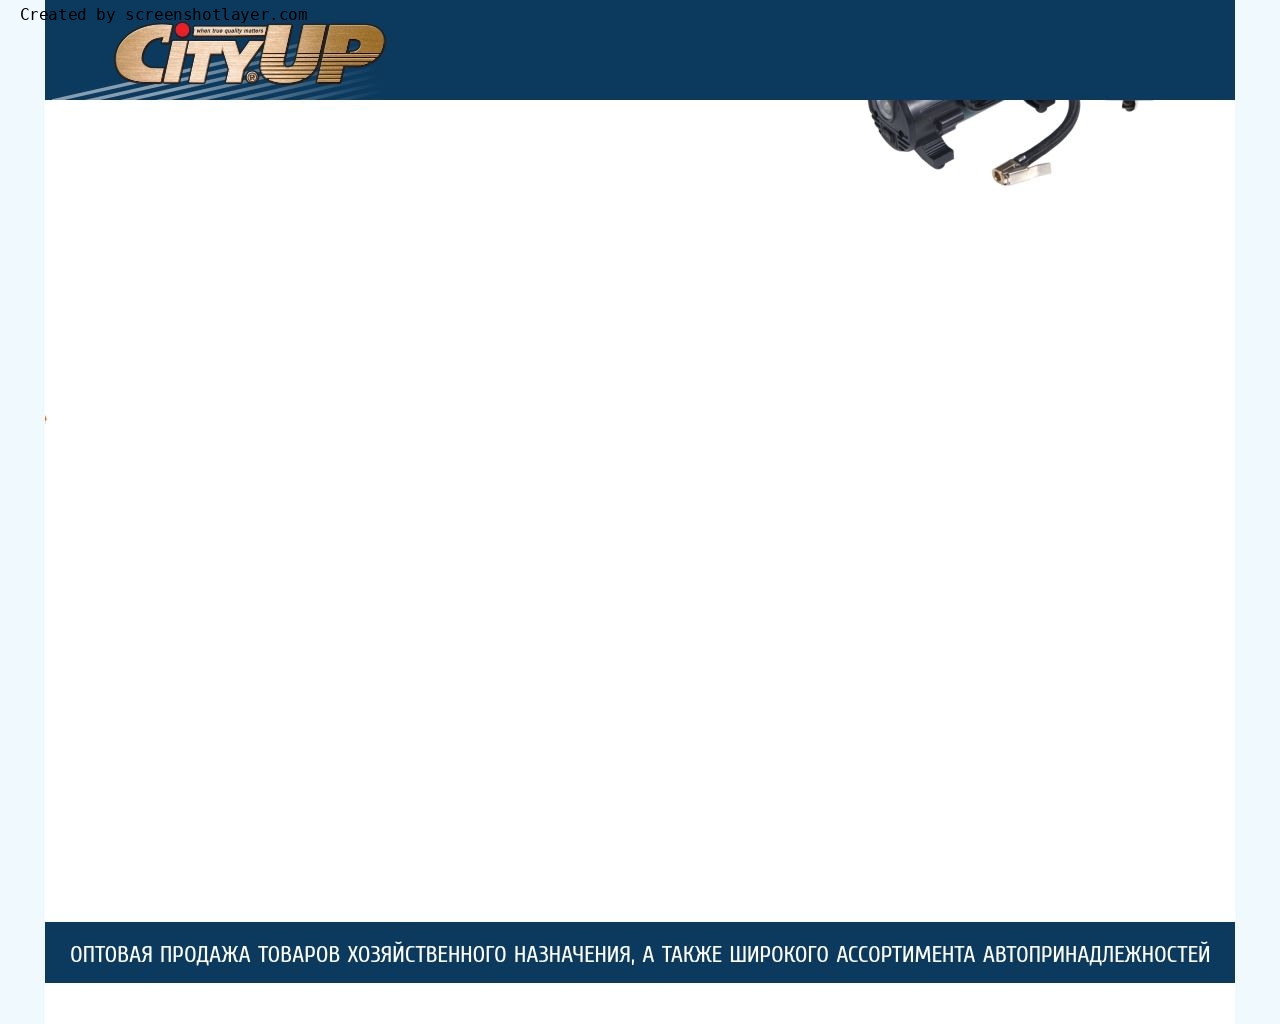 Изображение сайта cityup.ru в разрешении 1280x1024